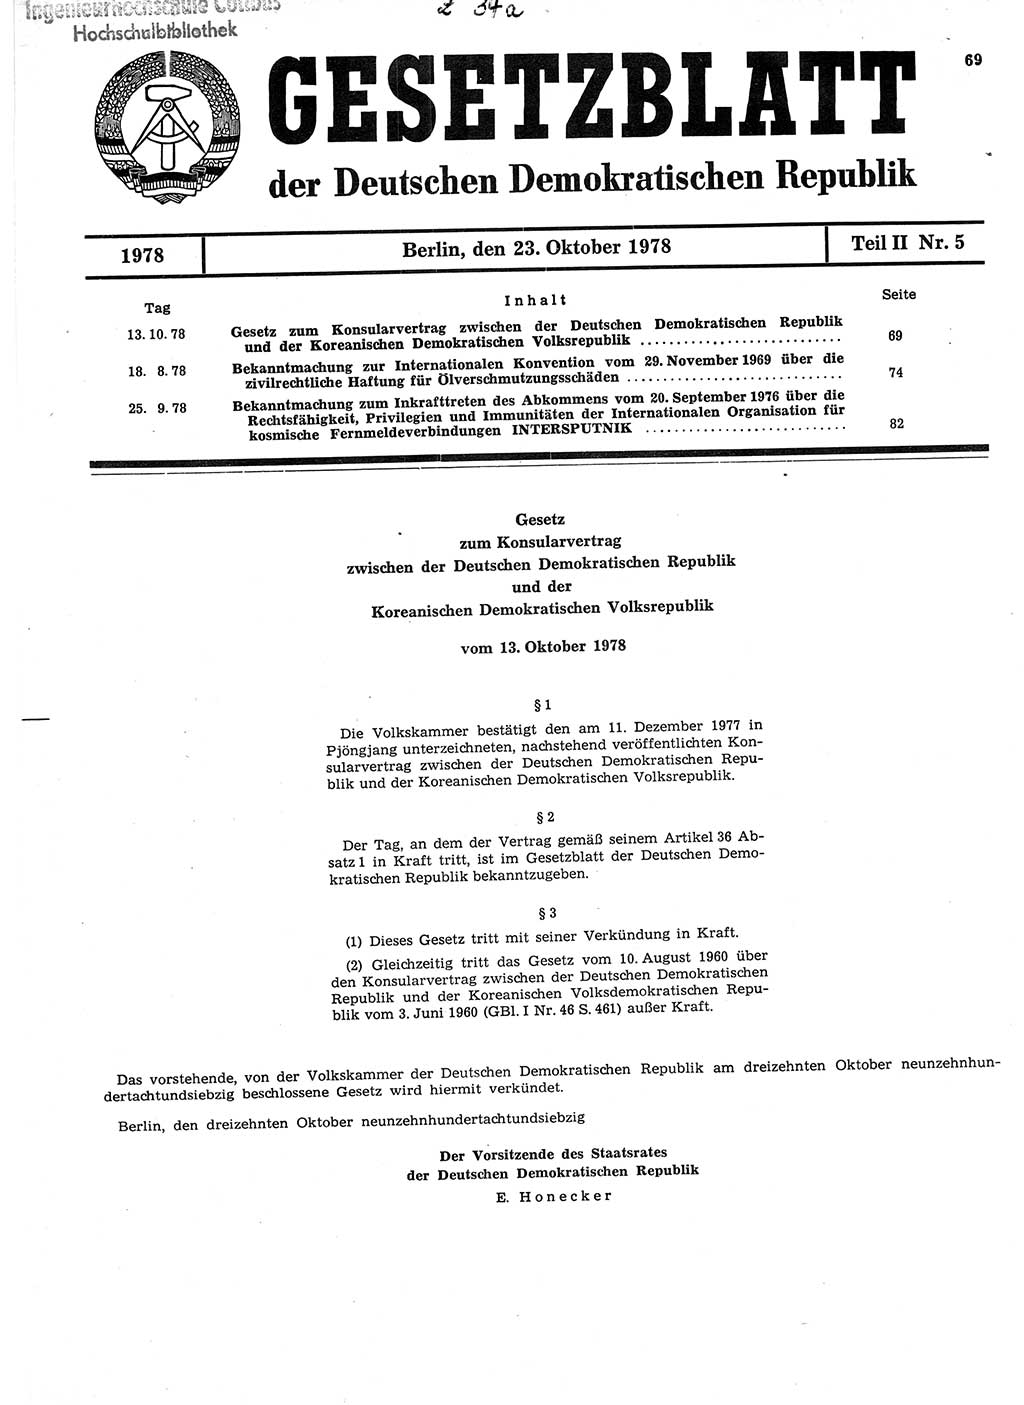 Gesetzblatt (GBl.) der Deutschen Demokratischen Republik (DDR) Teil ⅠⅠ 1978, Seite 69 (GBl. DDR ⅠⅠ 1978, S. 69)